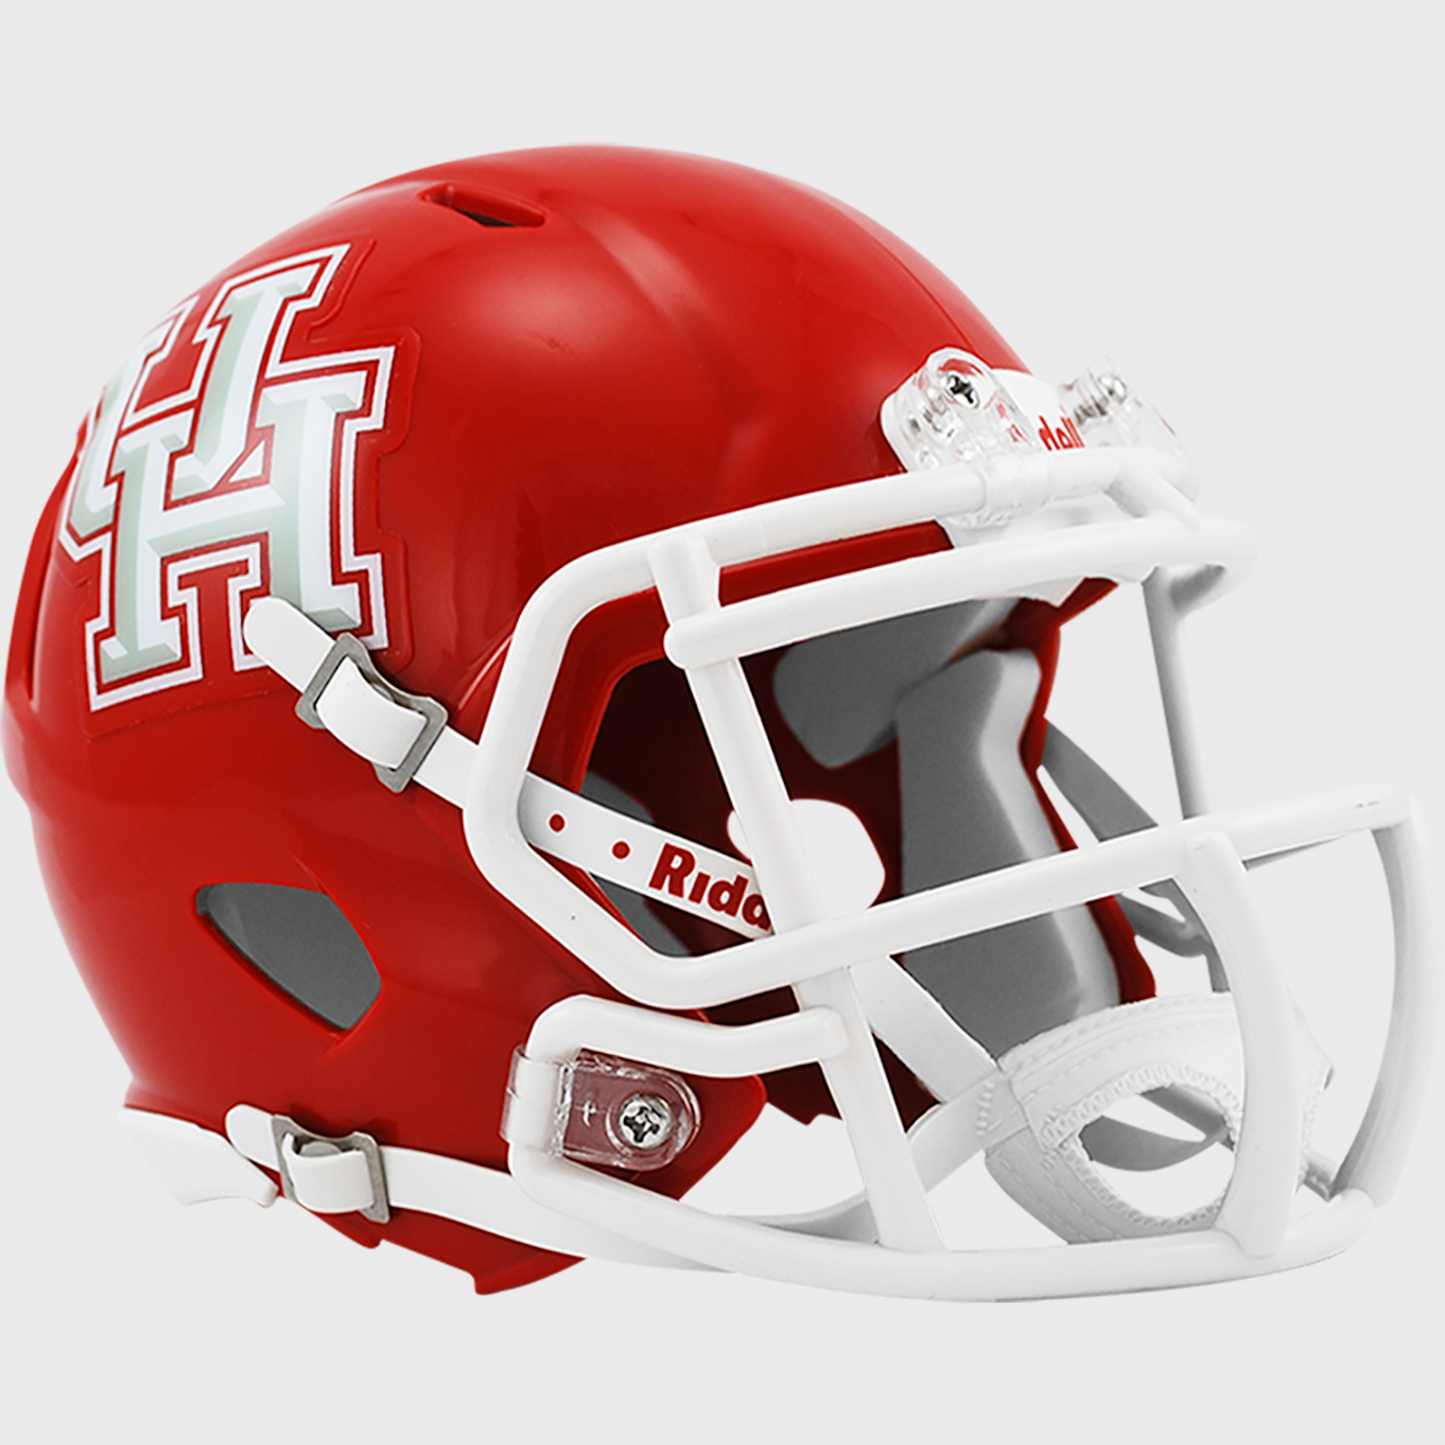 Houston Cougars mini helmet